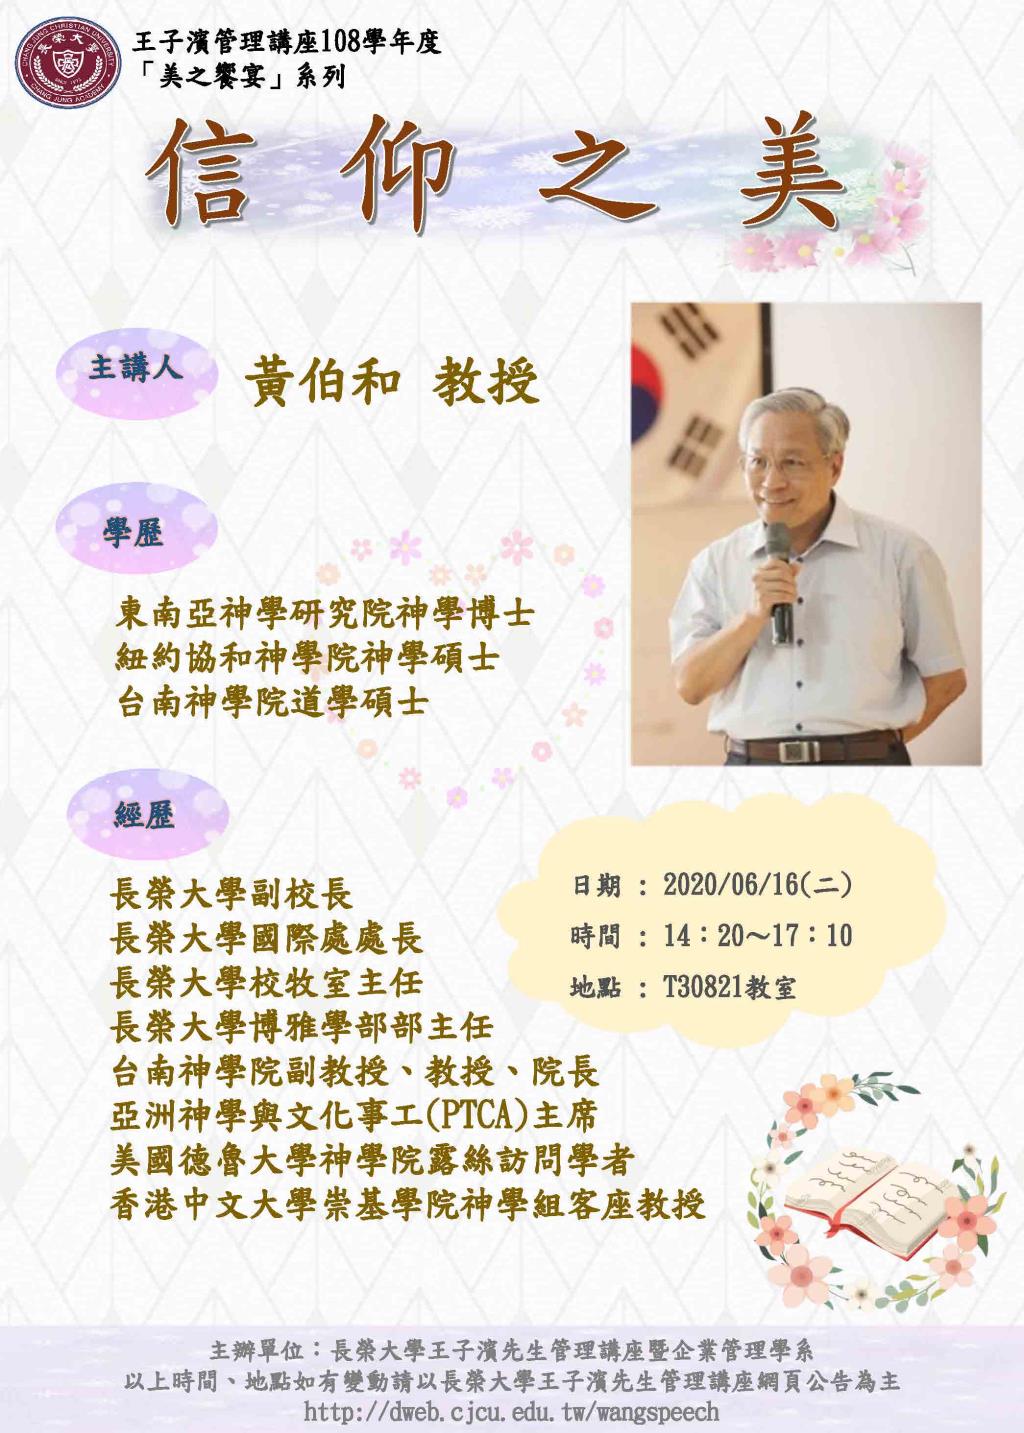 敬邀參加本週二下午(06/16)王子濱先生管理講---信仰之美_黃柏和 教授 專題演講